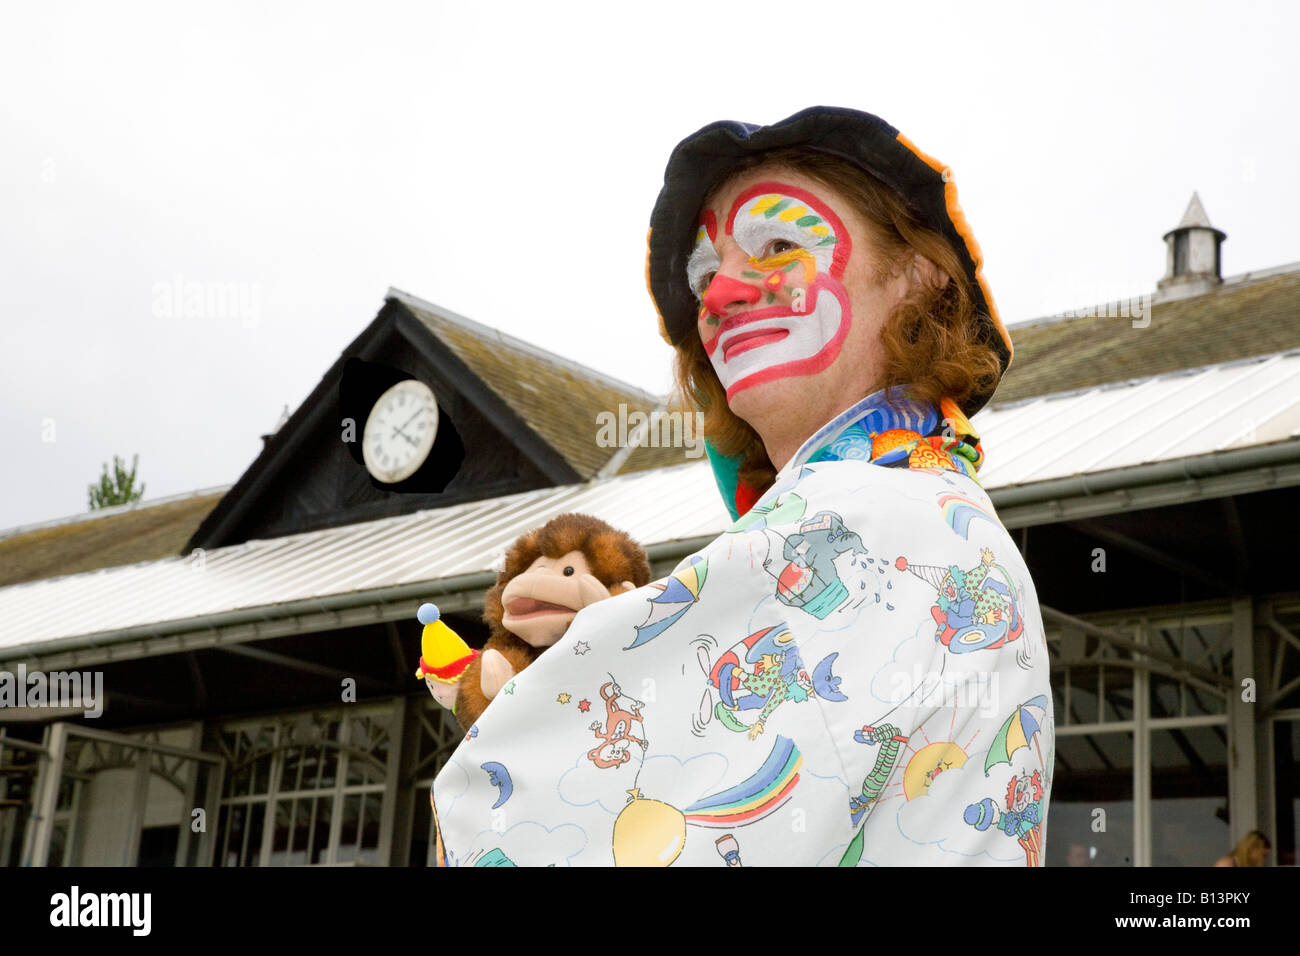 Les courses de chevaux ont participé à l'événement de Stevie (MR) le clown professionnel et de marionnettes à la réunion de courses à l'hippodrome de Perth, Ecosse, Royaume-Uni Tayside Banque D'Images